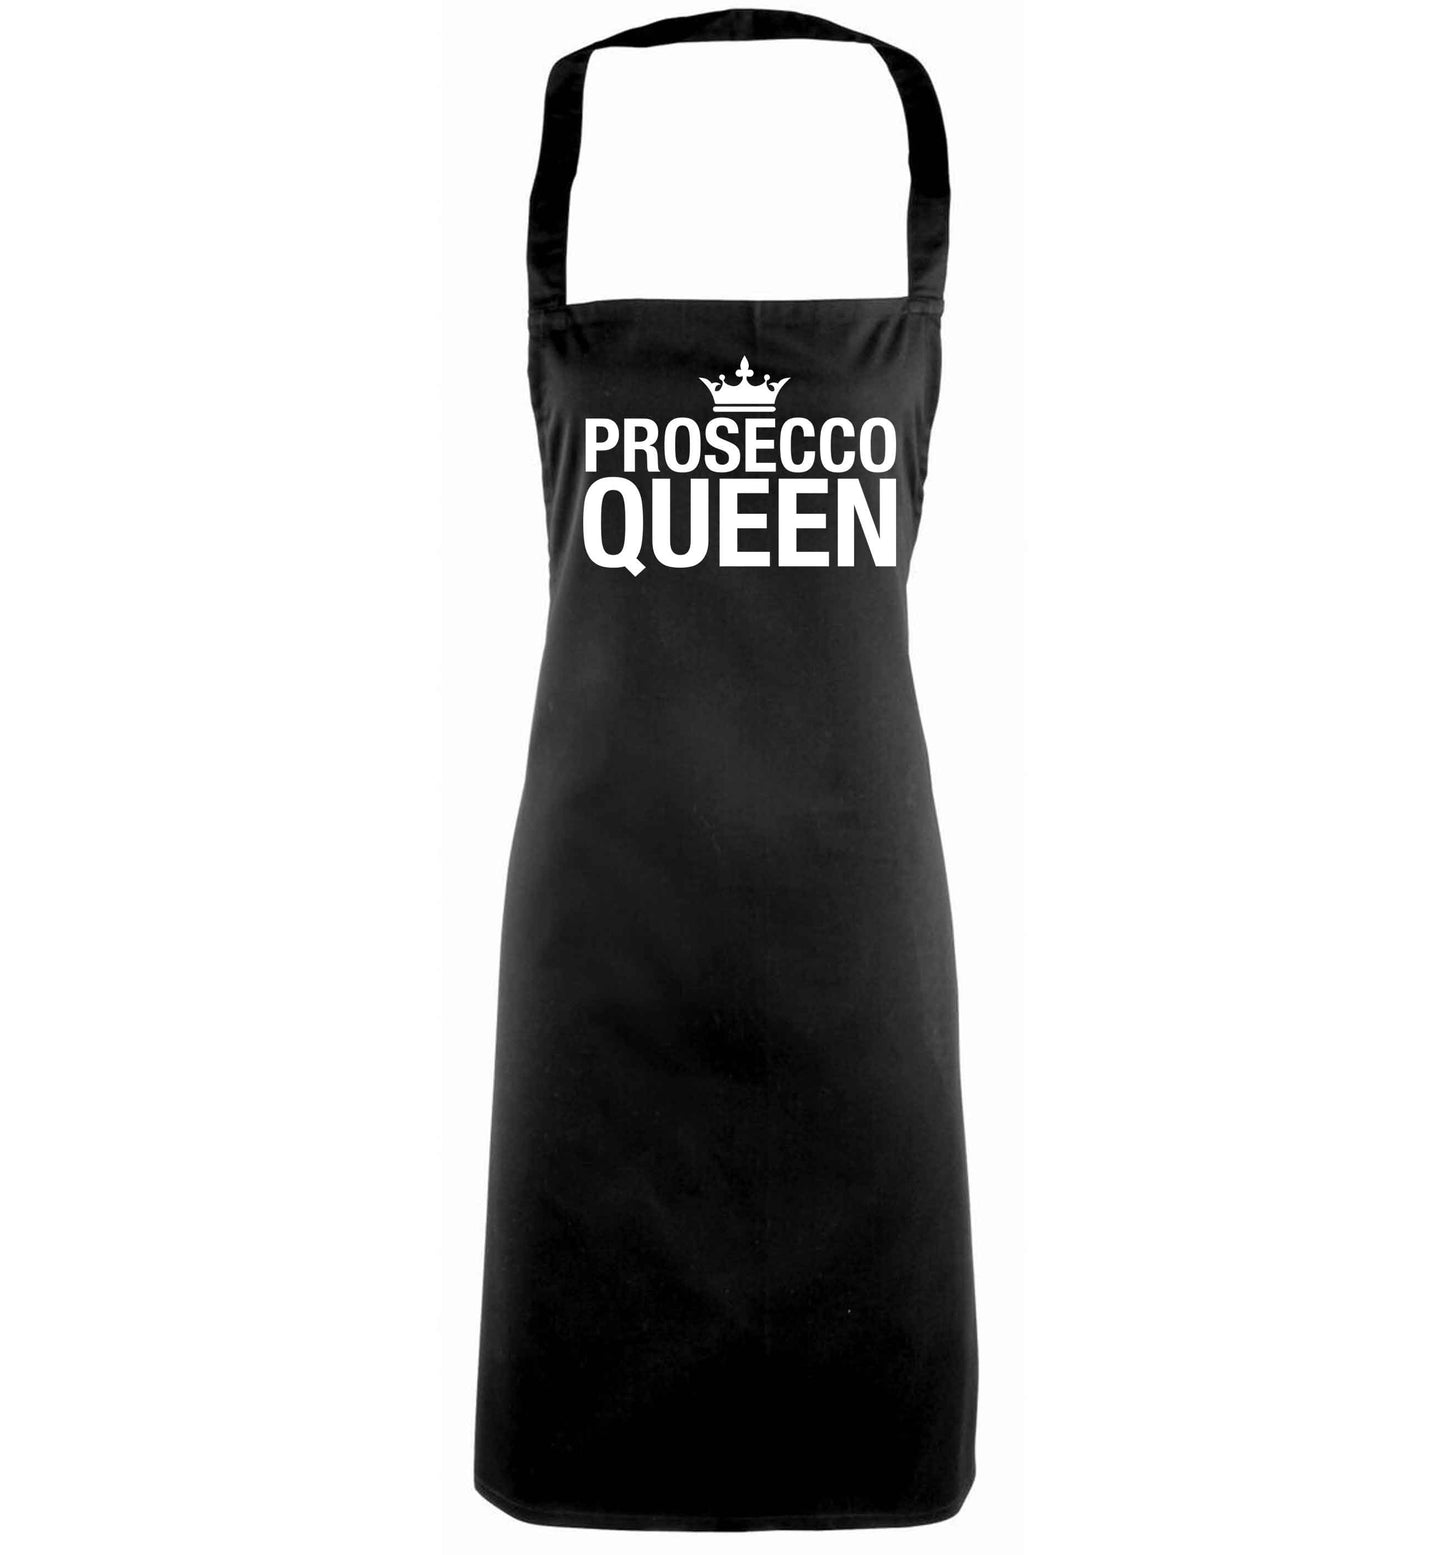 Prosecco queen black apron